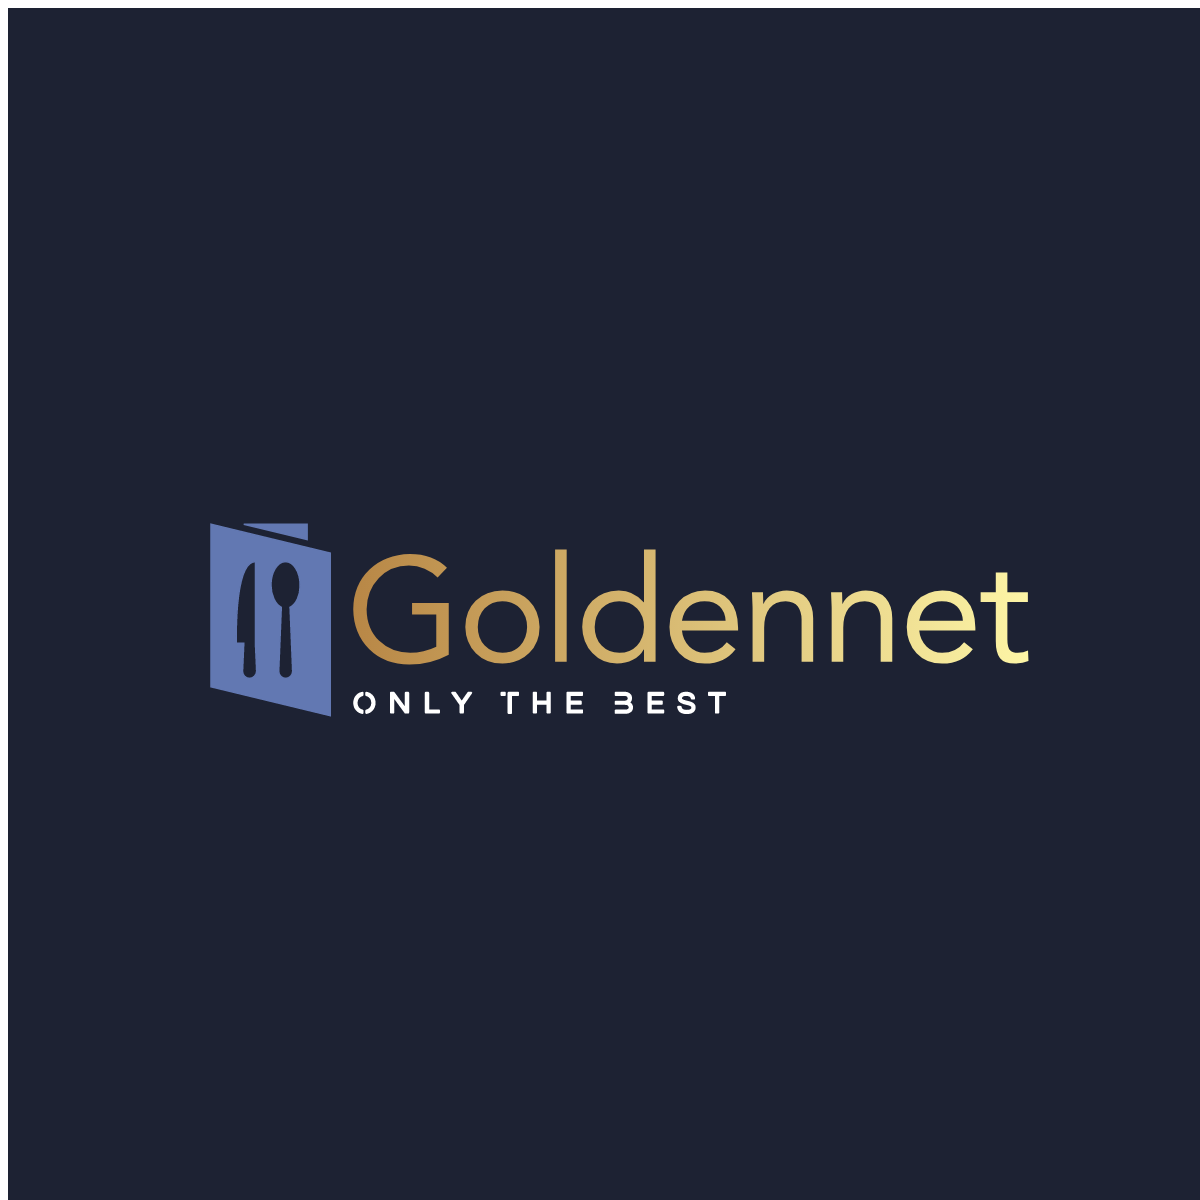 Golden Net